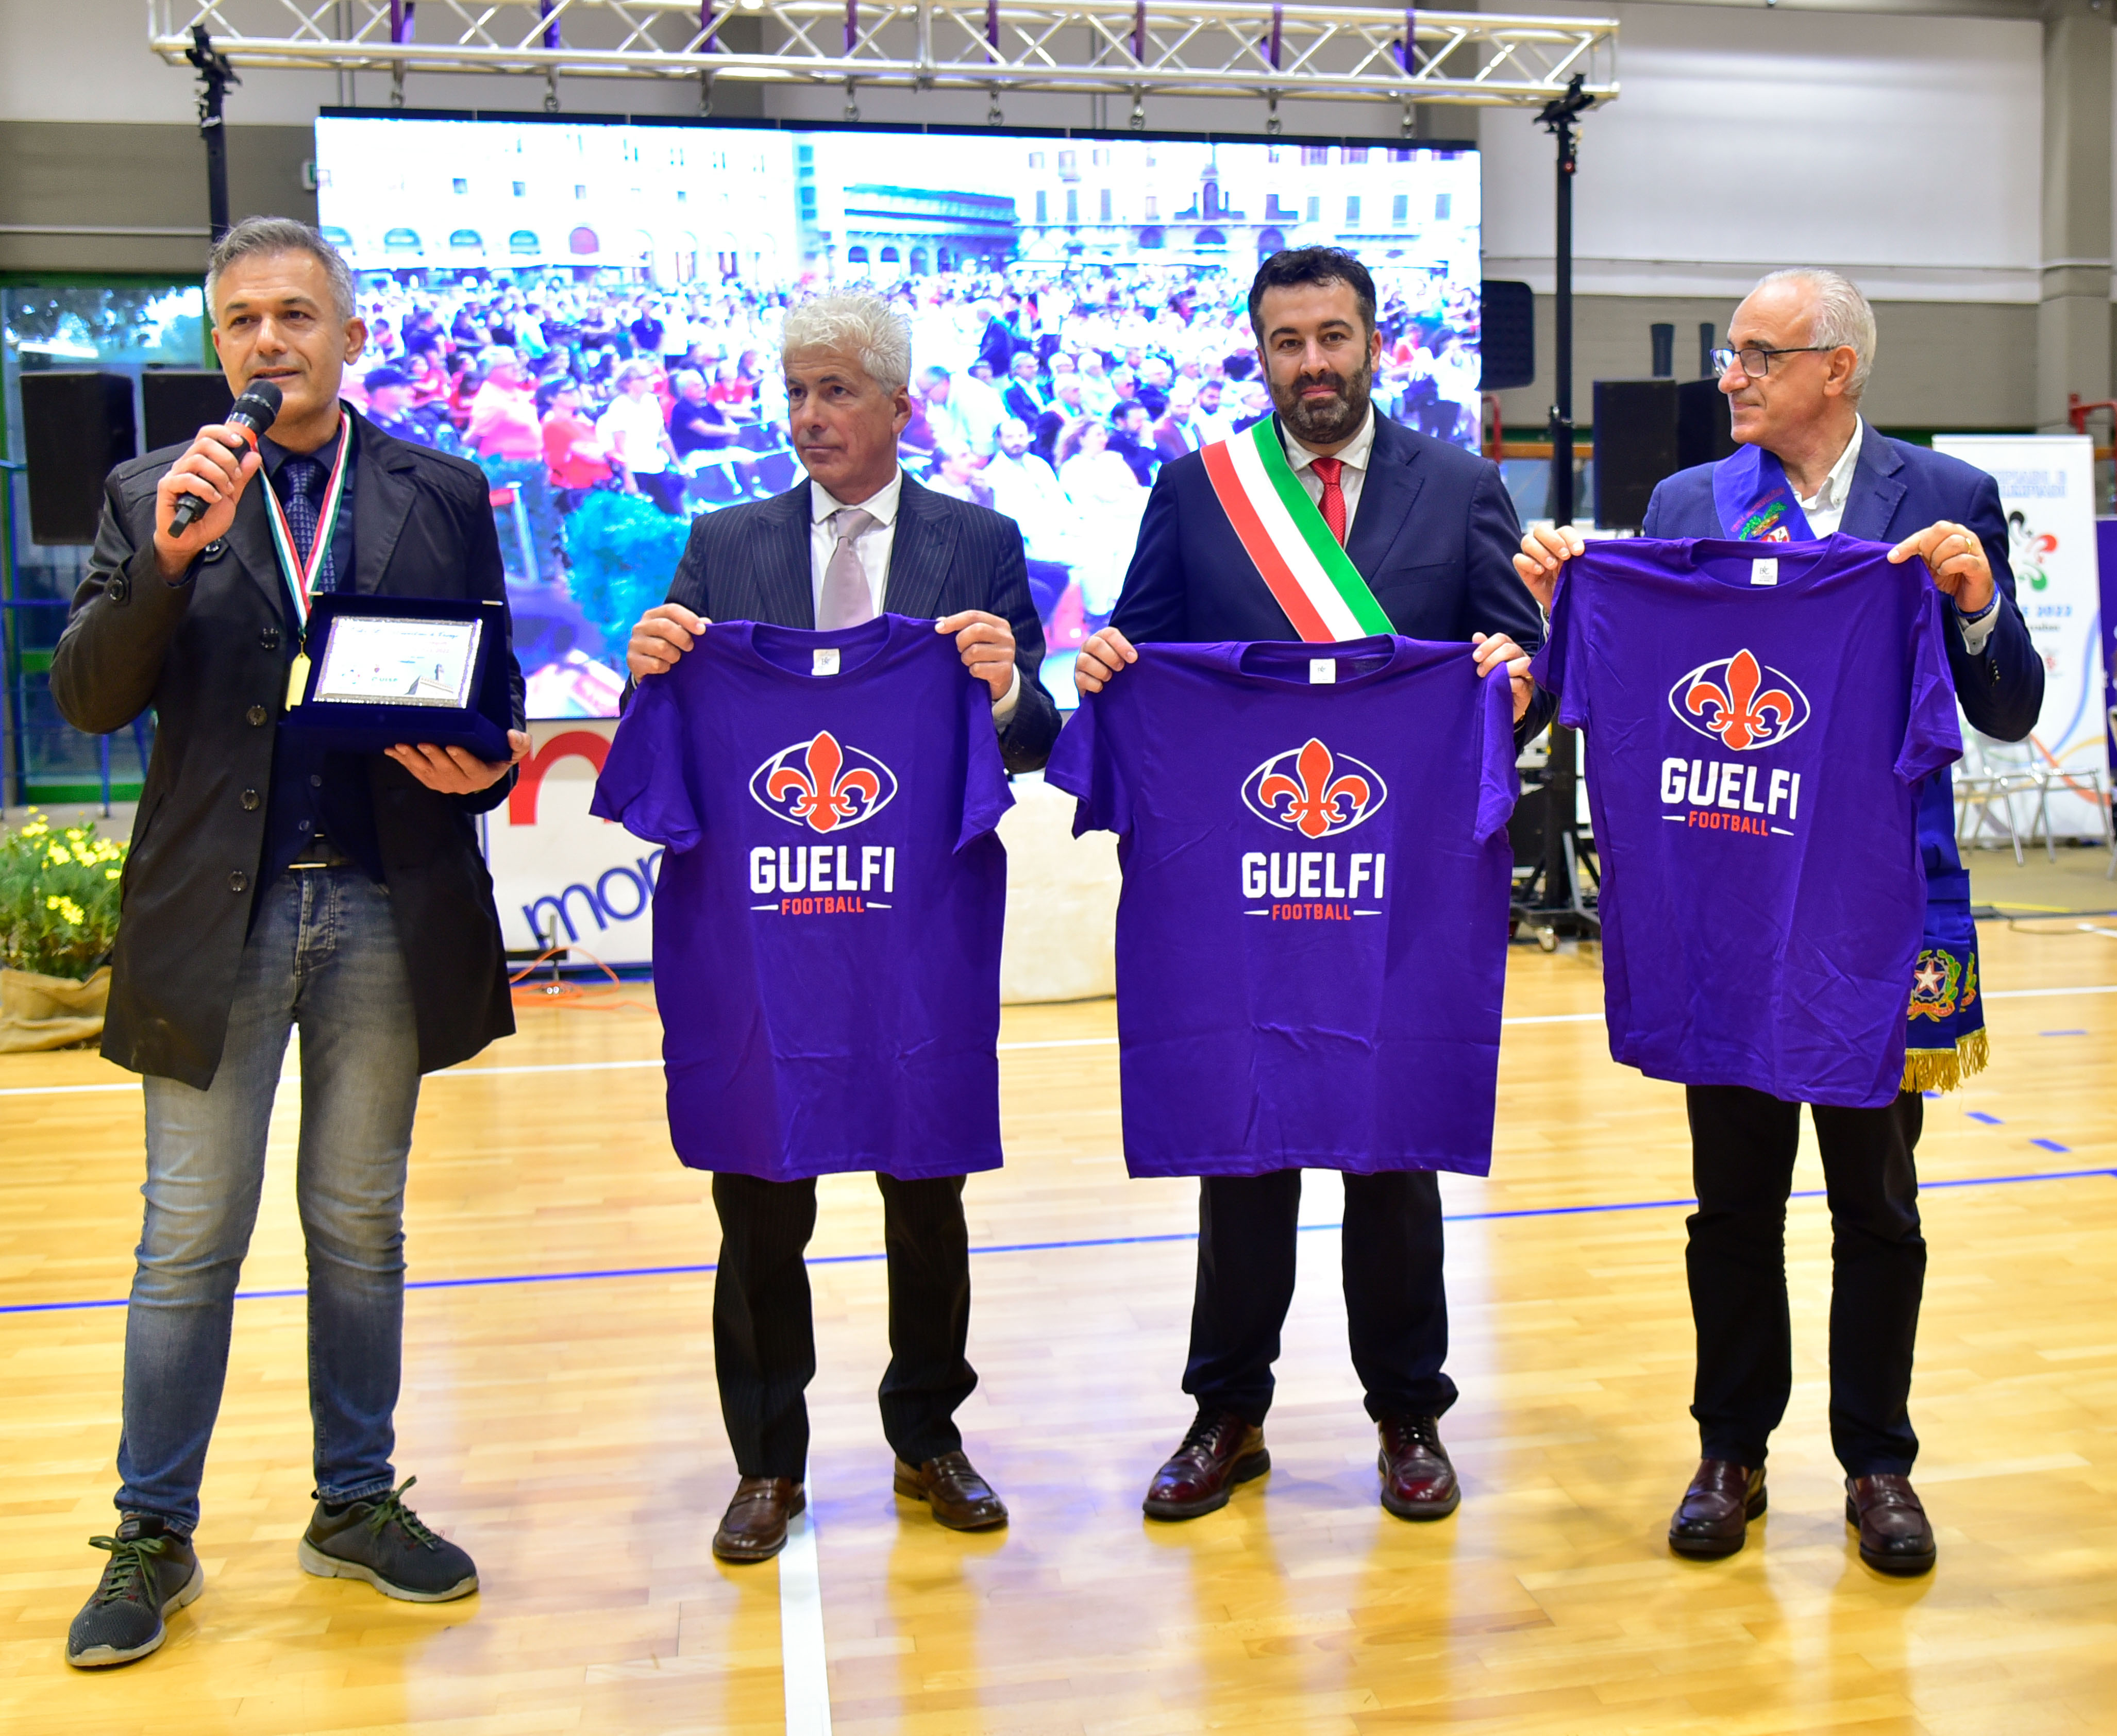 Premiazione dei Guelfi, campioni di Italia di Football americano